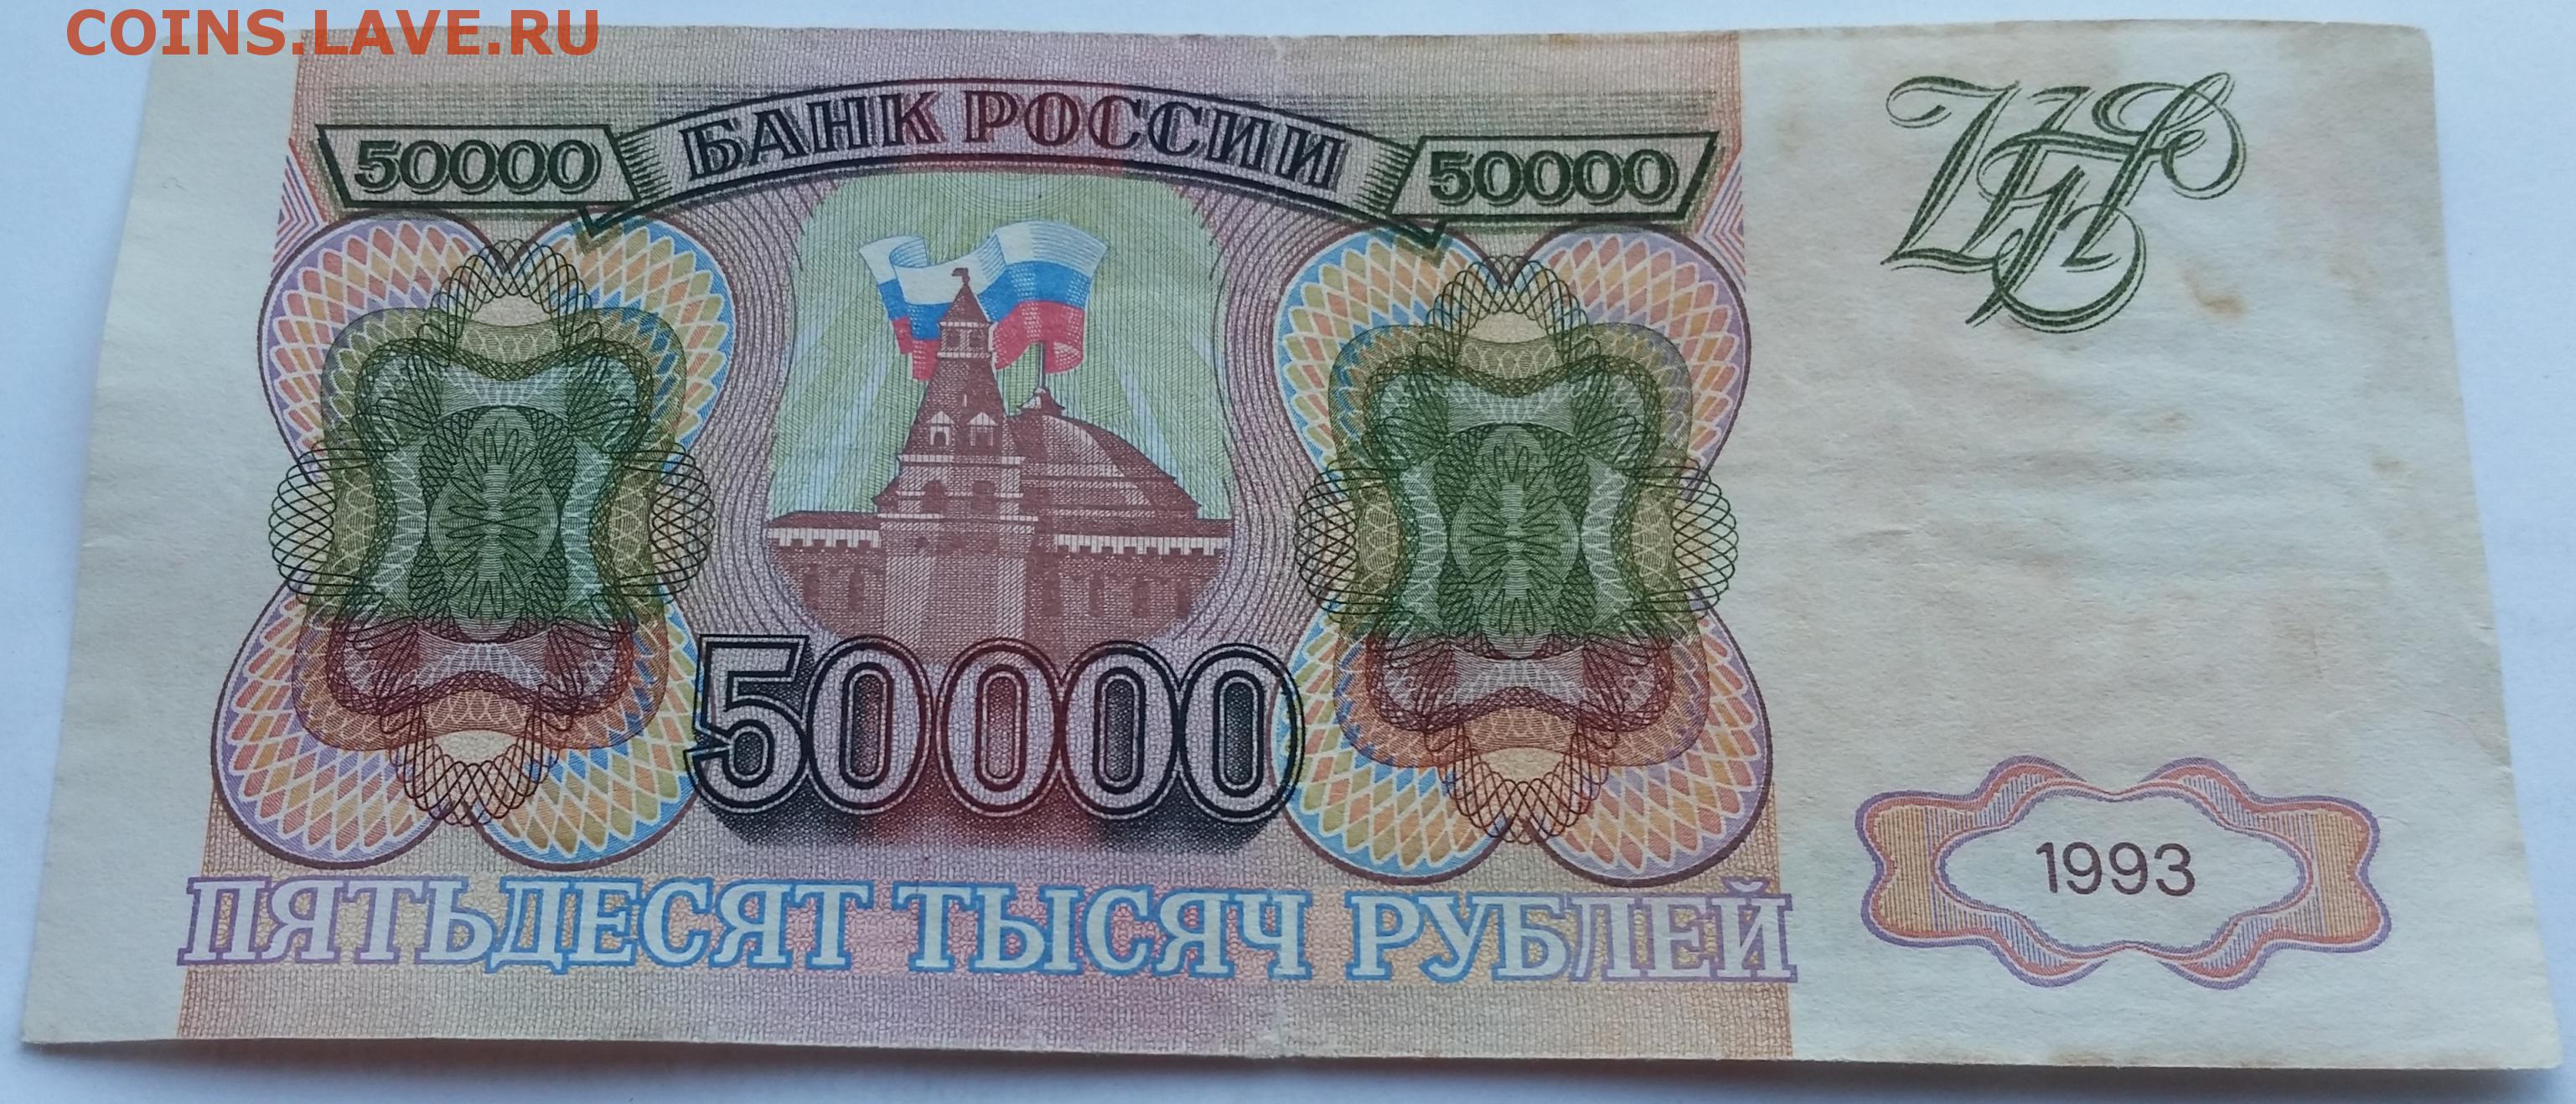 Купюра 50000 рублей 1993. Купюра 50000 рублей 1993 года. Банкнота 50000 рублей 1993. 50000 рублей 1993